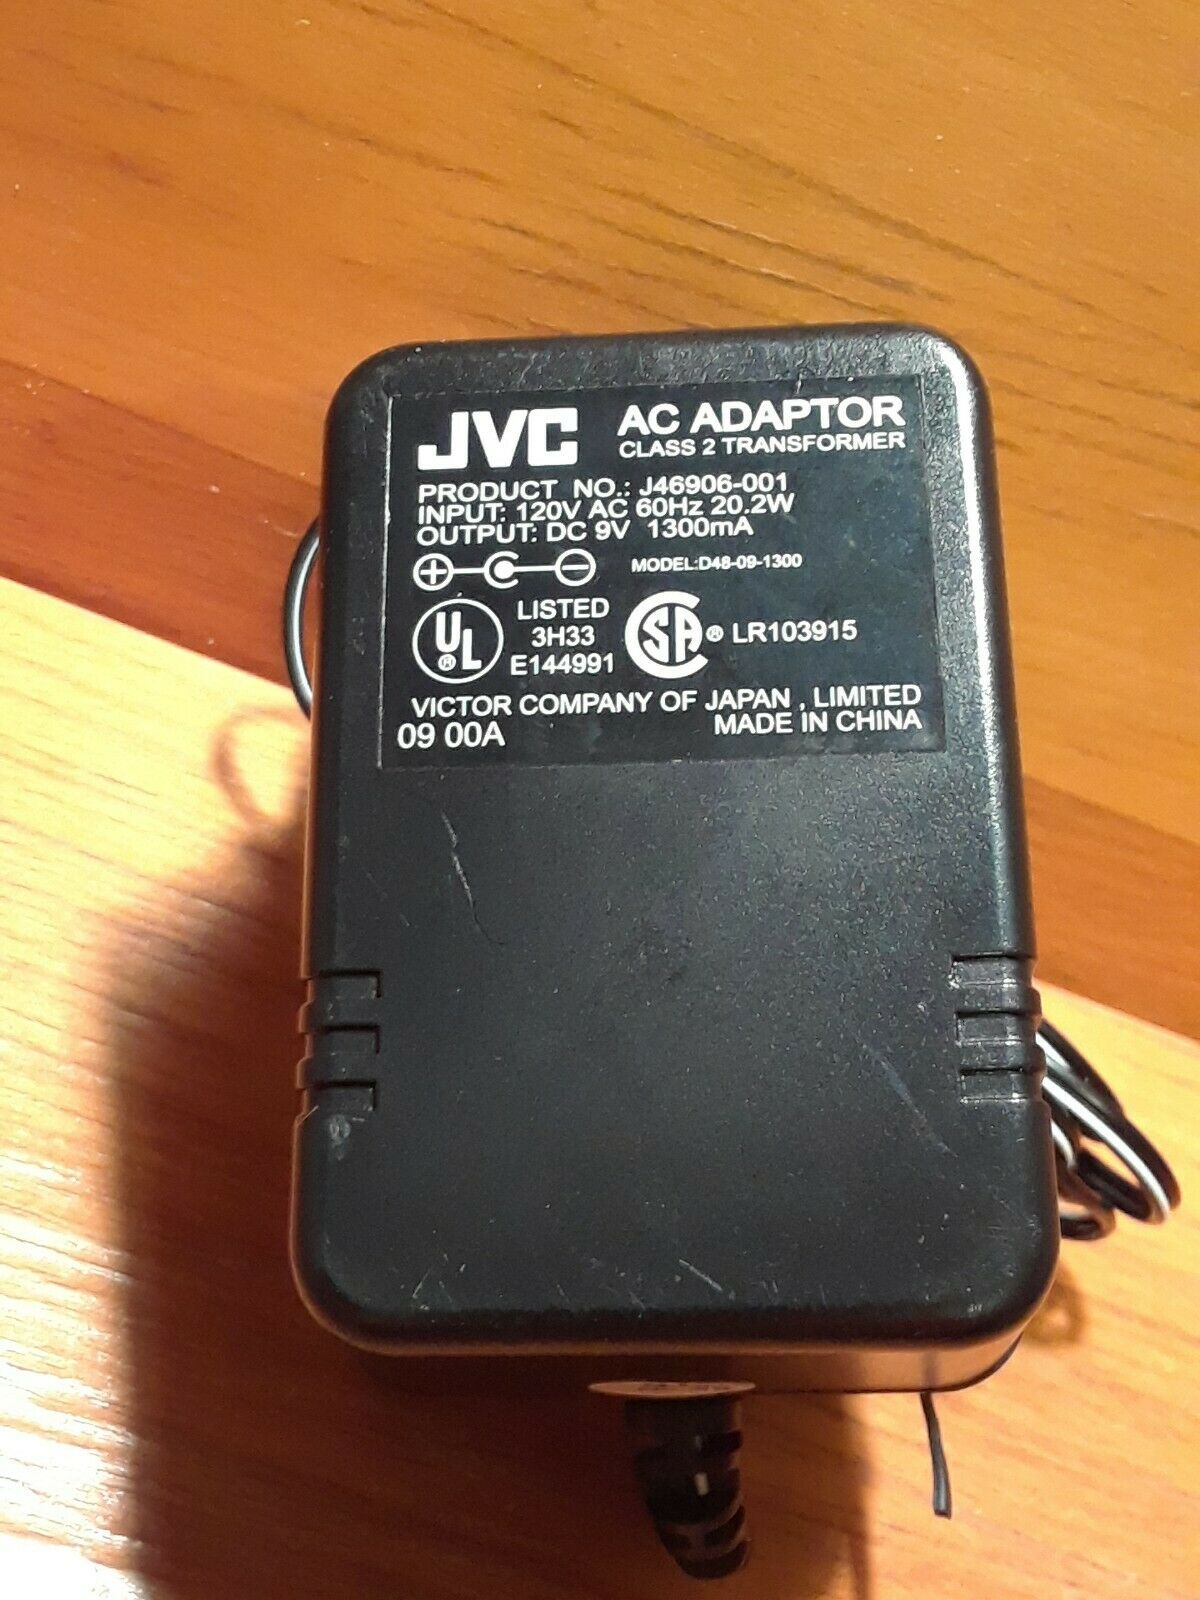 New 9V 1300mA JVC J46906-001 Class 2 Transformer Ac Adapter - Click Image to Close